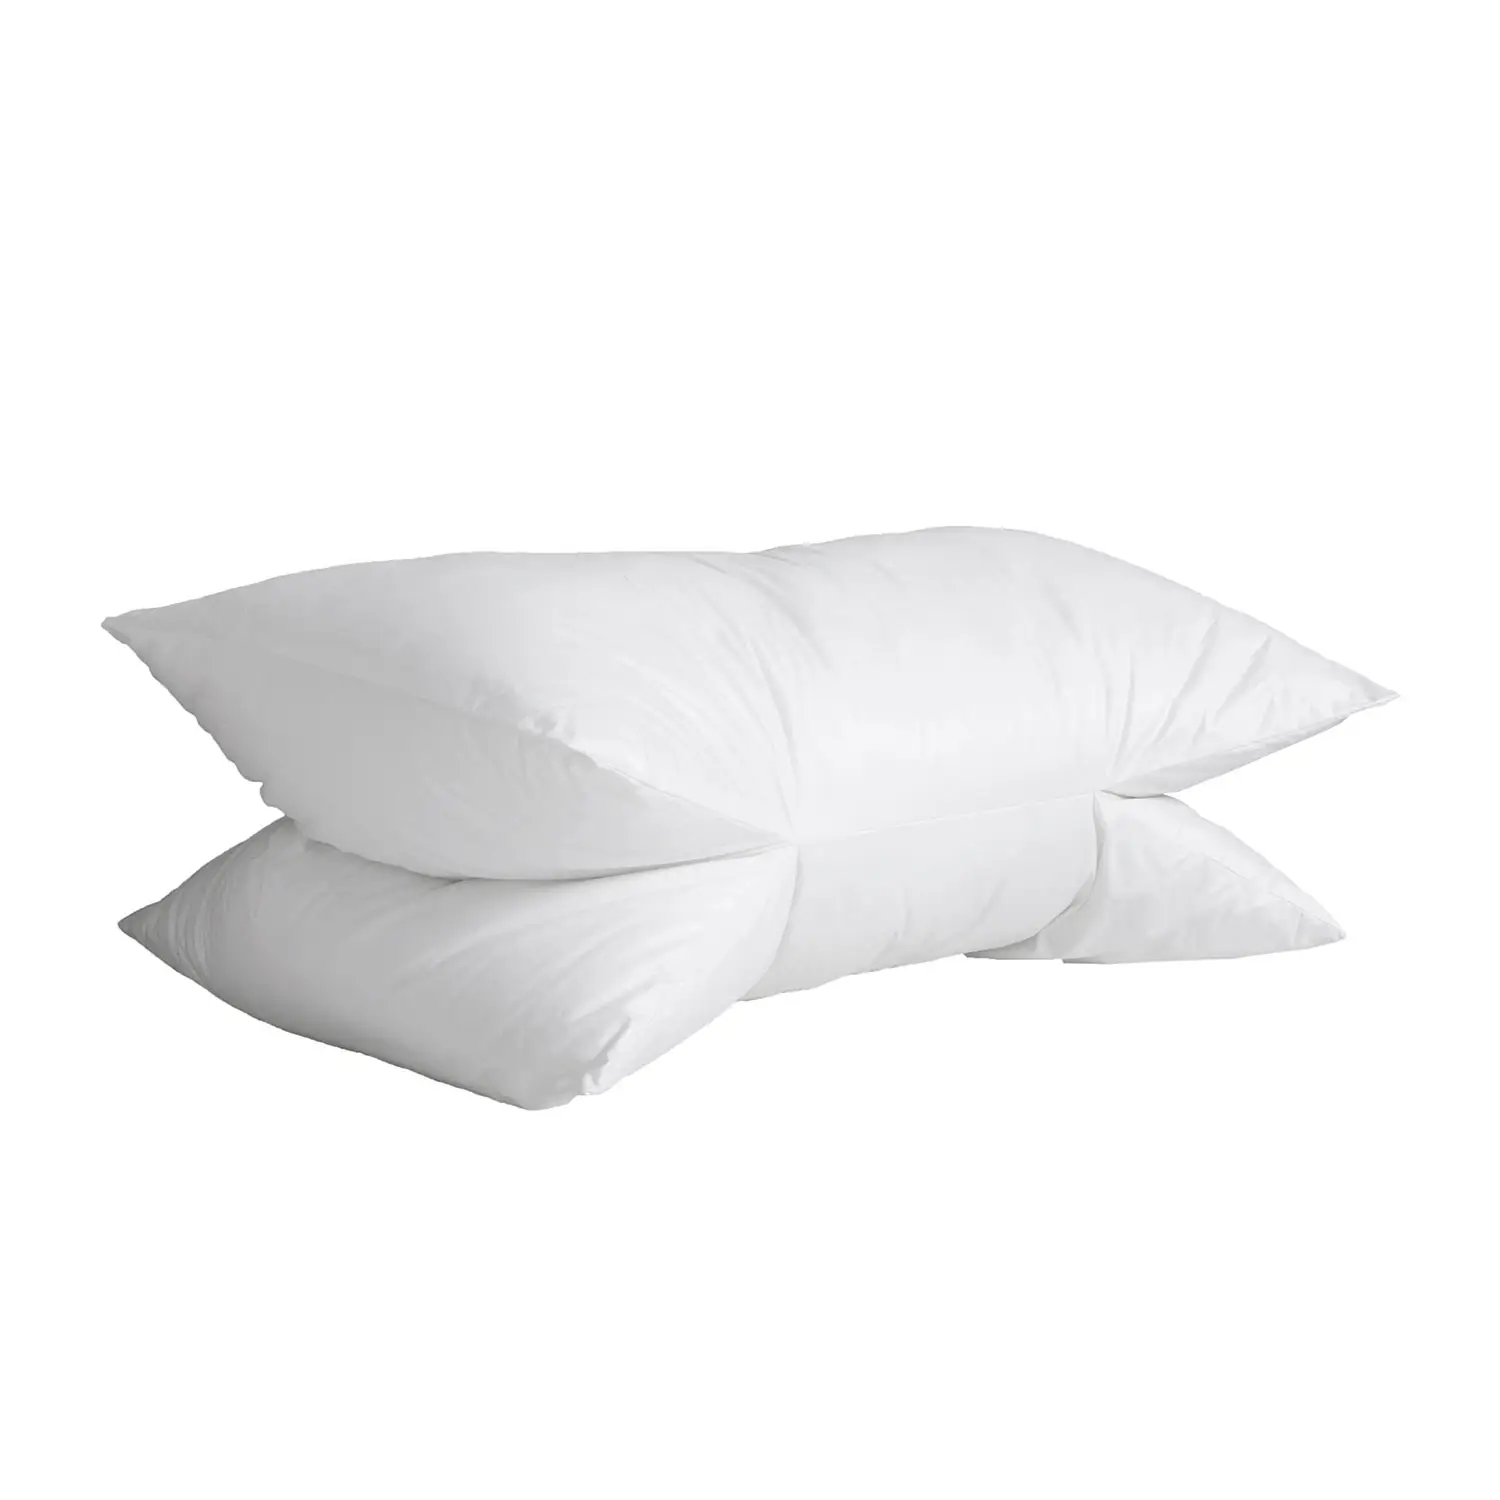 Butterfly Sleep Pillow Travel Pillow With Firm Fill PillowCase